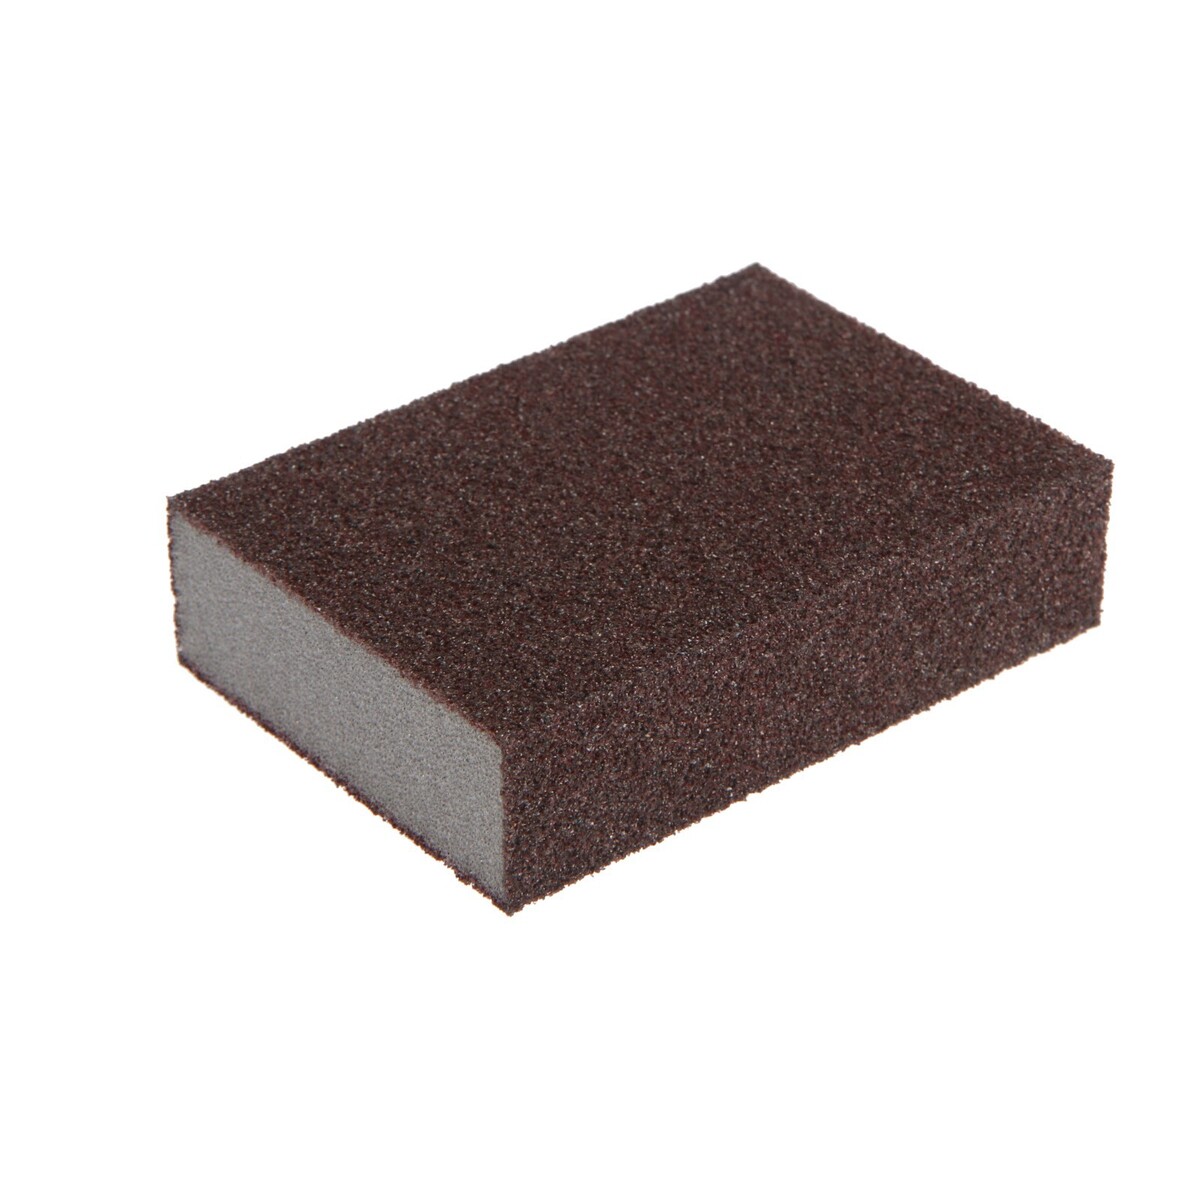 Губка абразивная шлифовальная тундра, мягкая, 100 х 70 х 25 мм, p60 amig8558 абразивная губка sanding sponge sheet 280